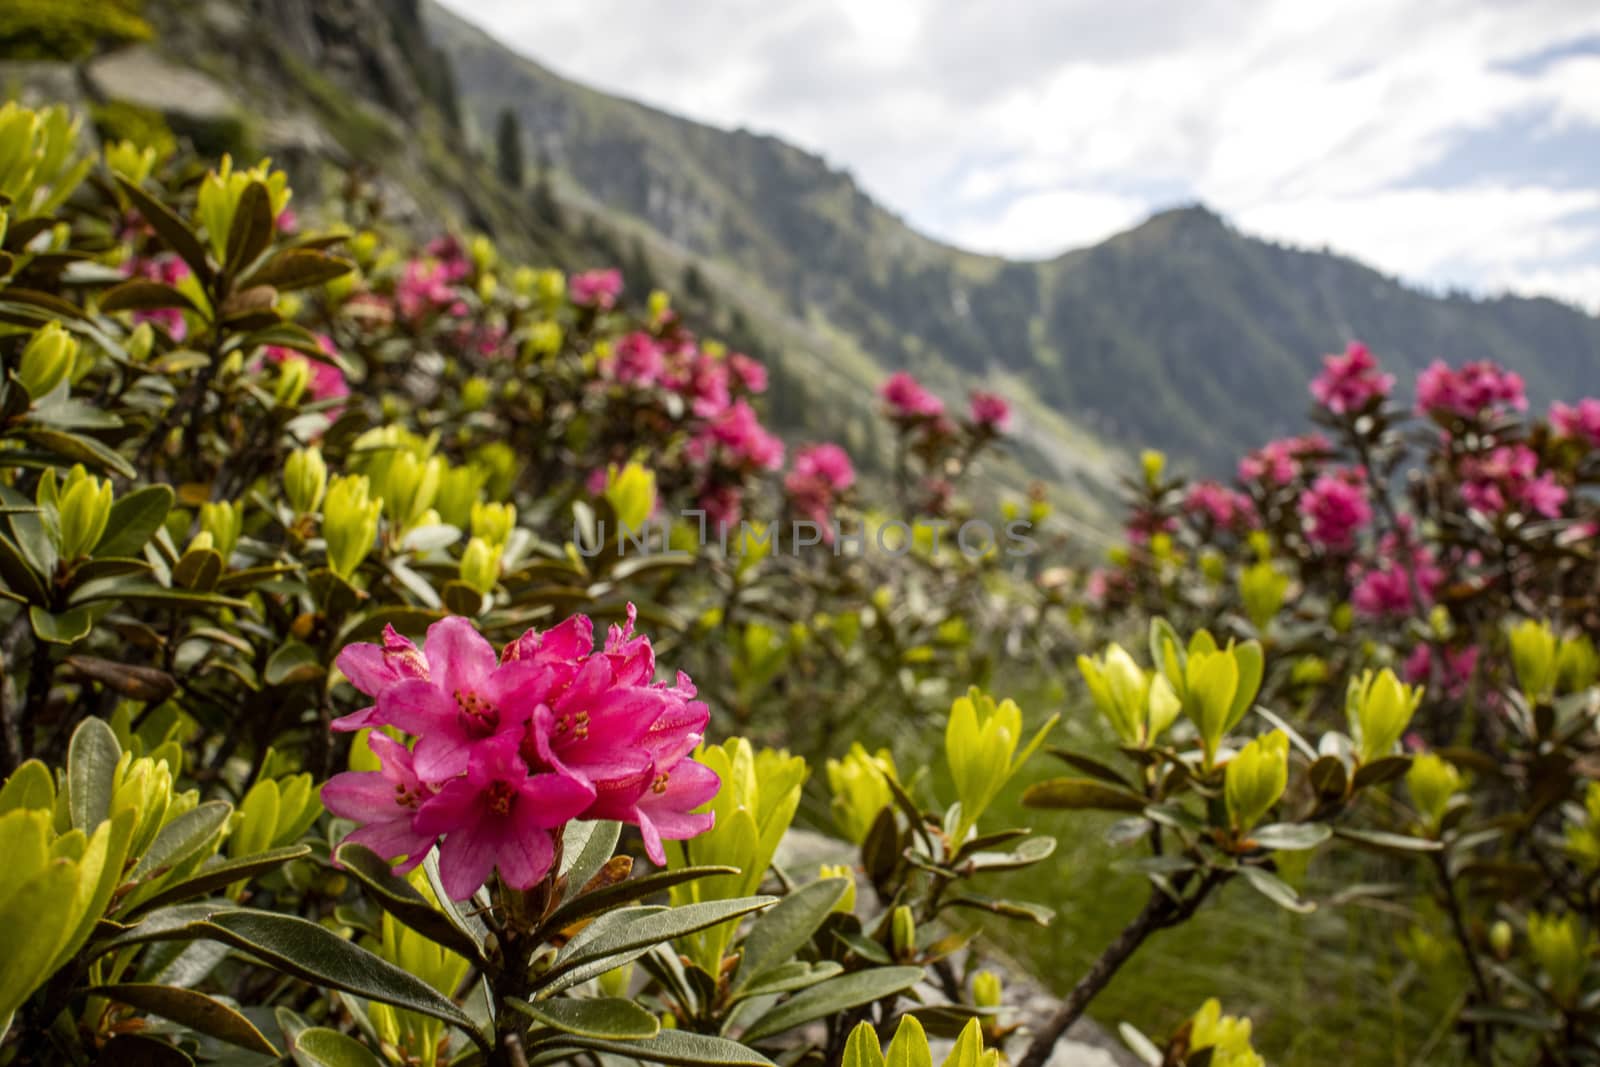 alpenrose flowers in austria